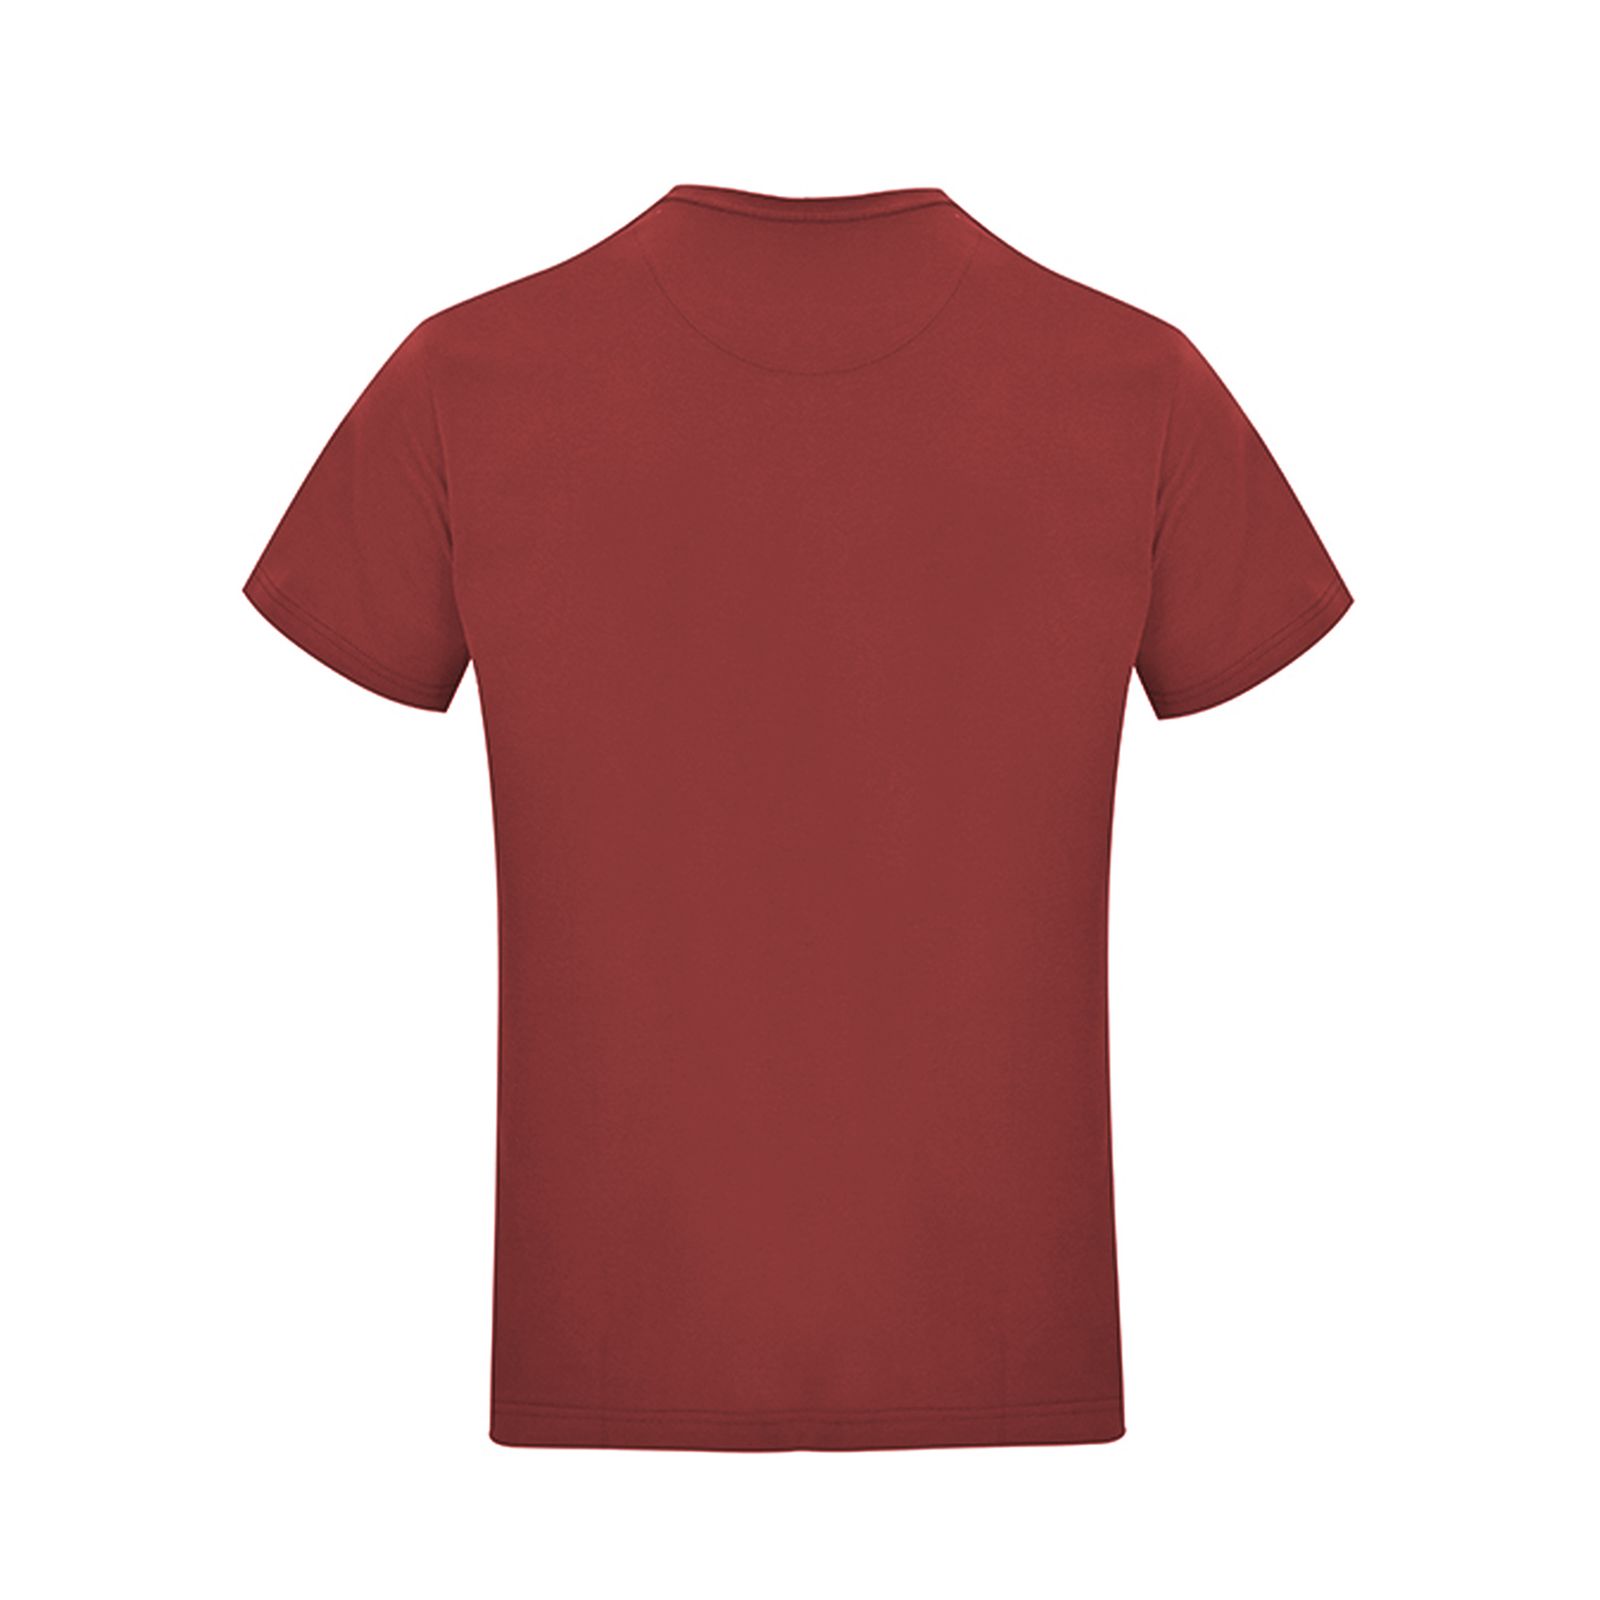 تی شرت آستین کوتاه مردانه بادی اسپینر مدل 11964737 کد 2 رنگ زرشکی -  - 3